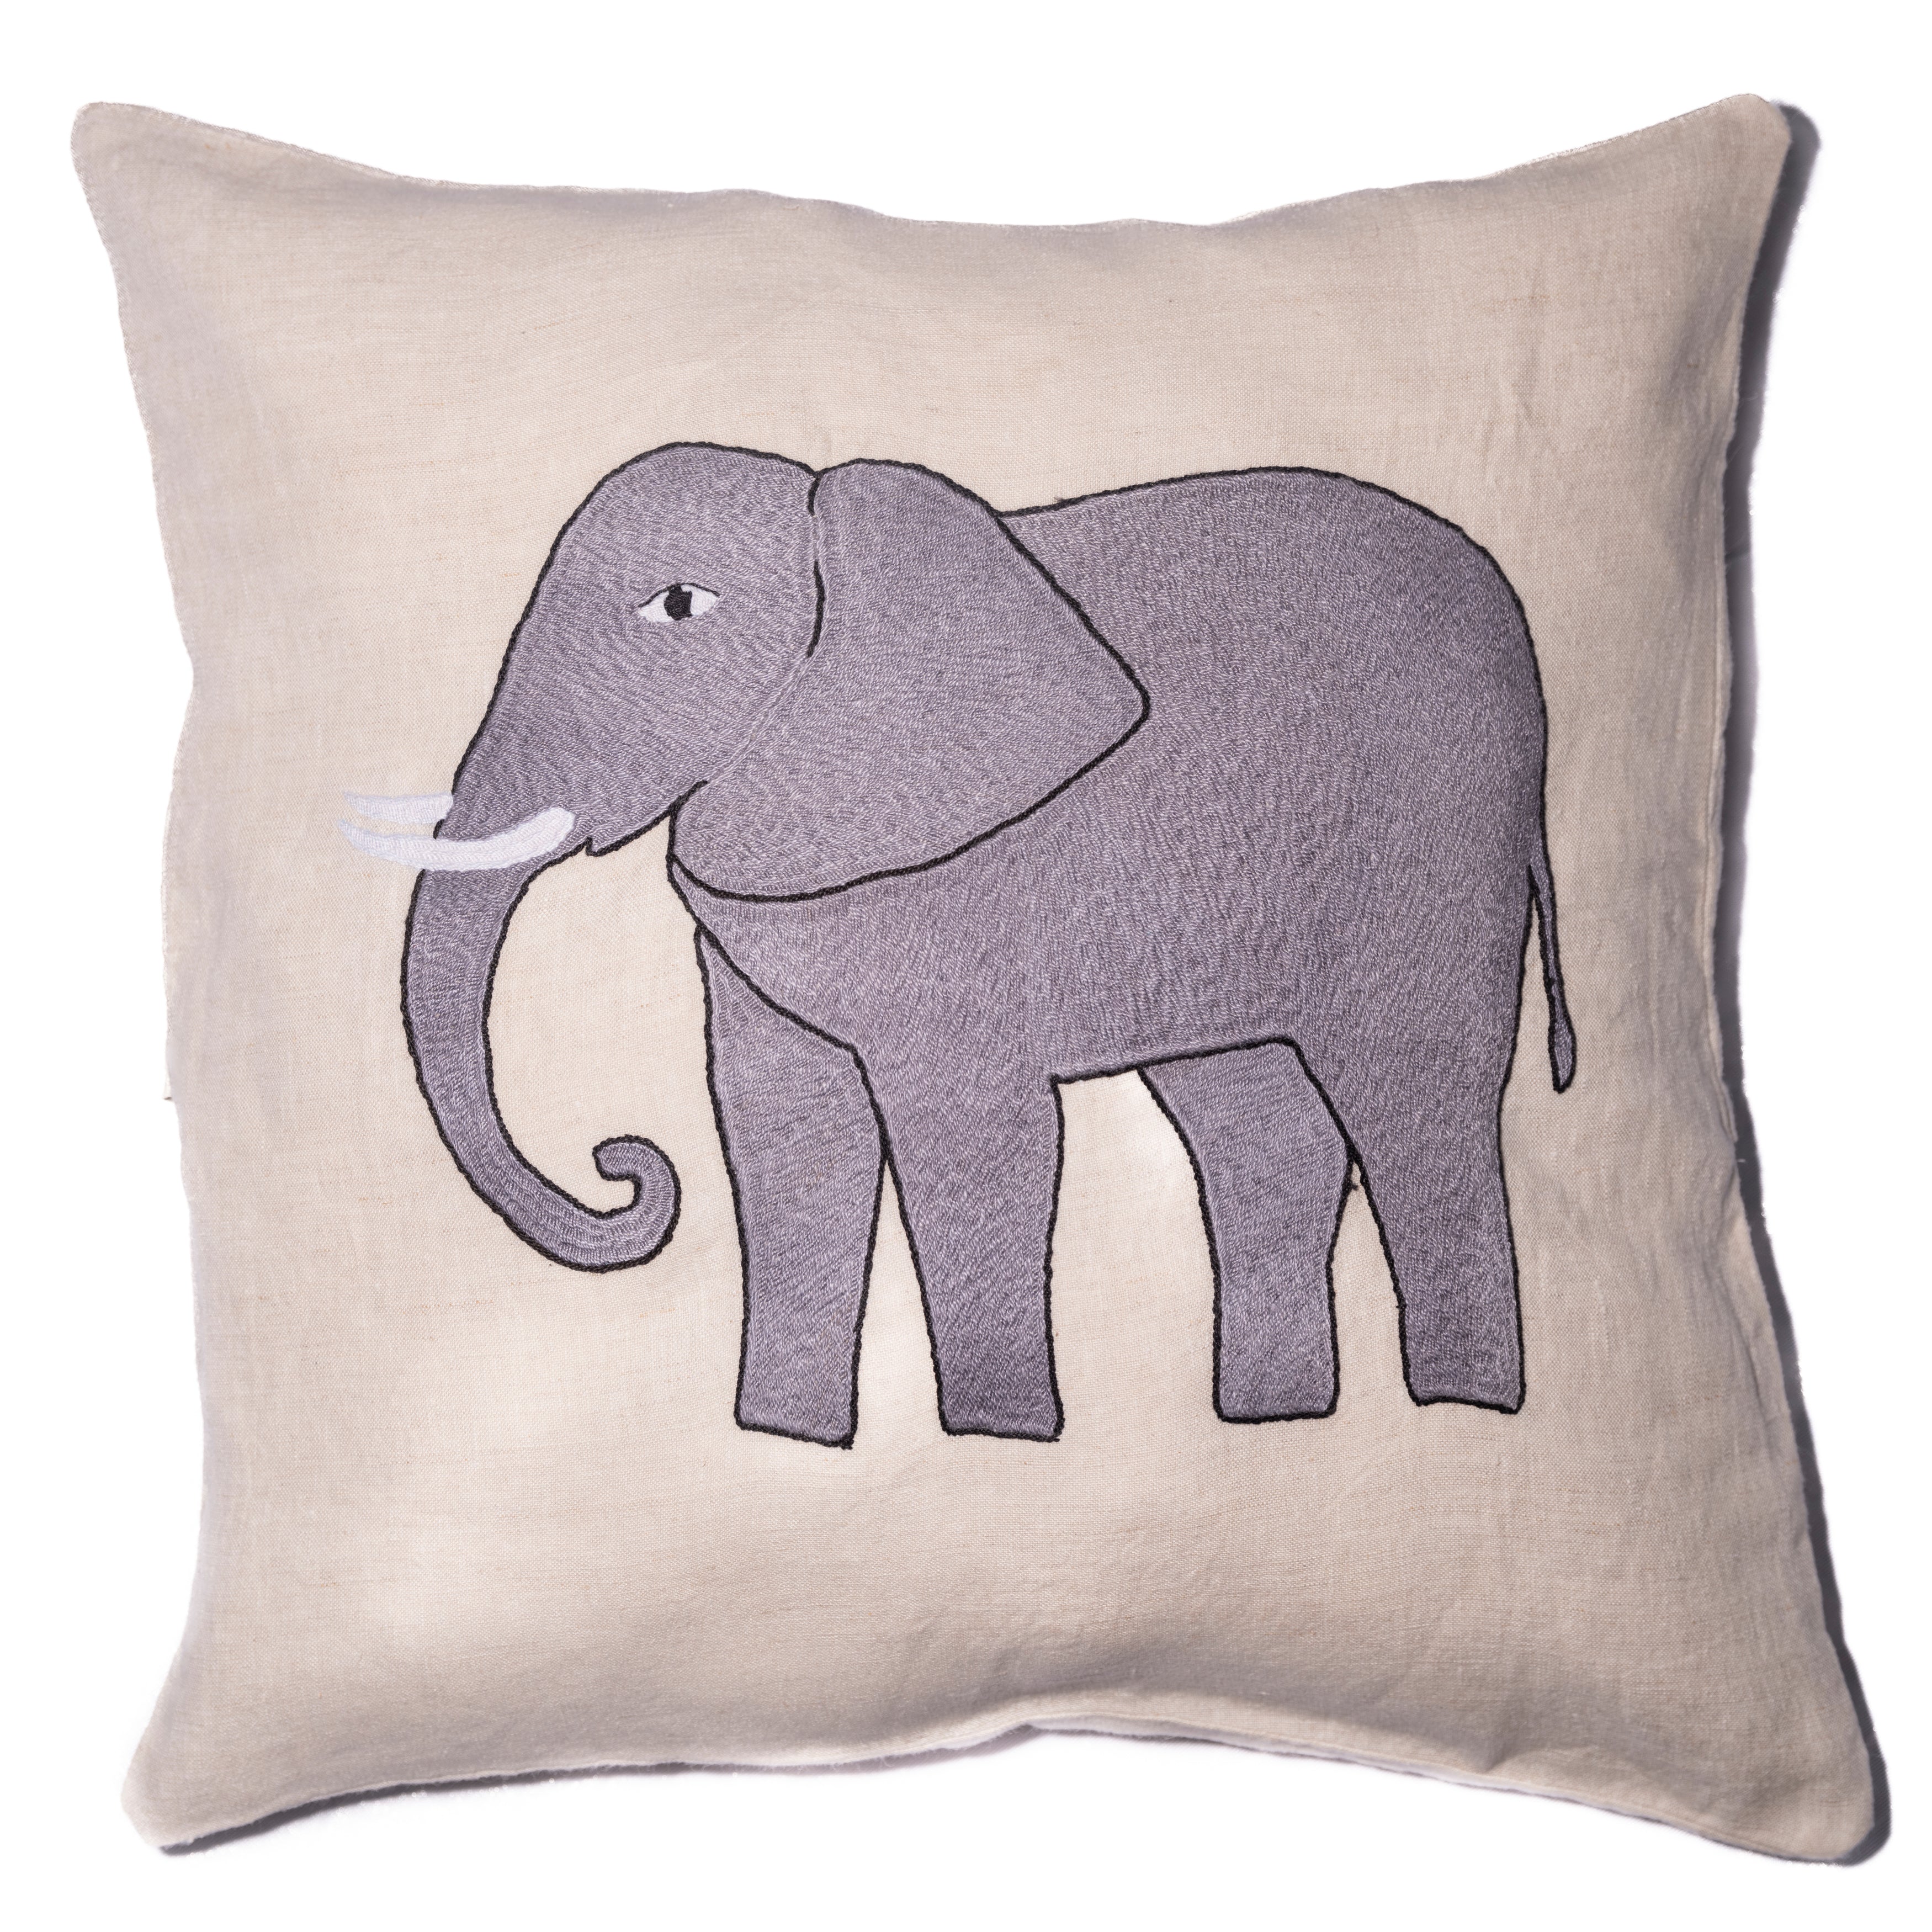 Elephant pillow on natural linen